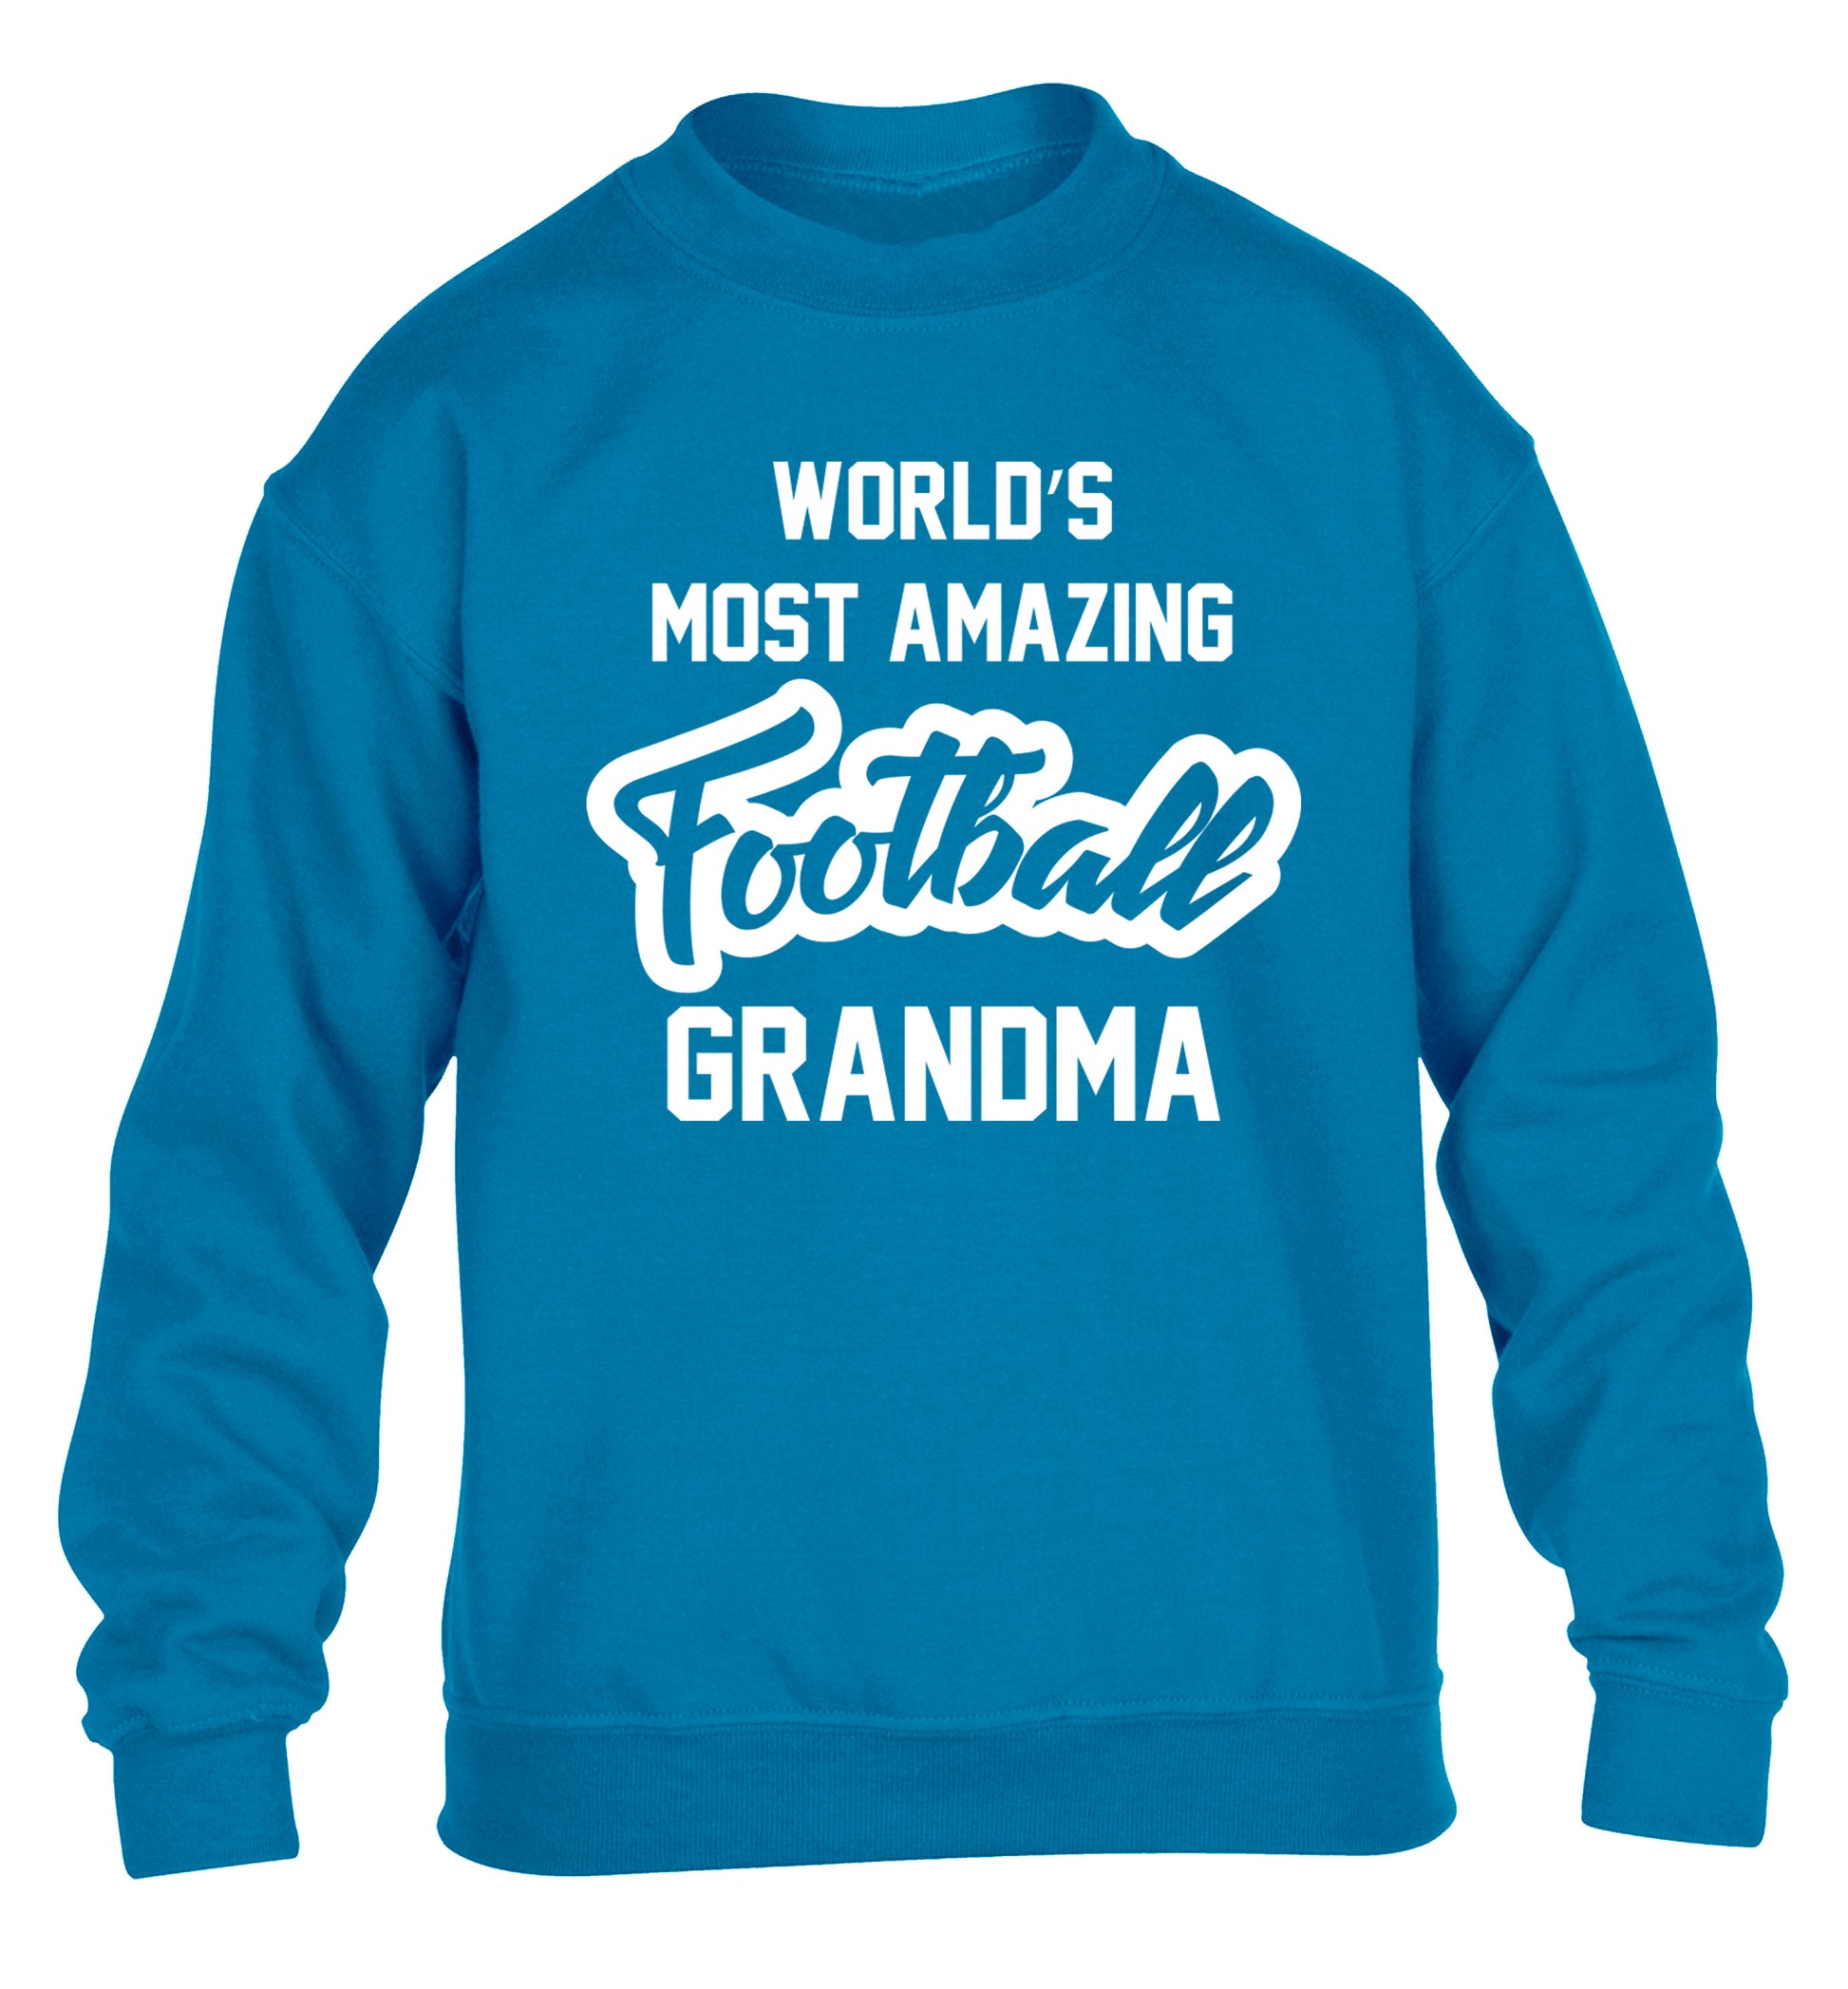 Worlds most amazing football grandma children's blue sweater 12-14 Years